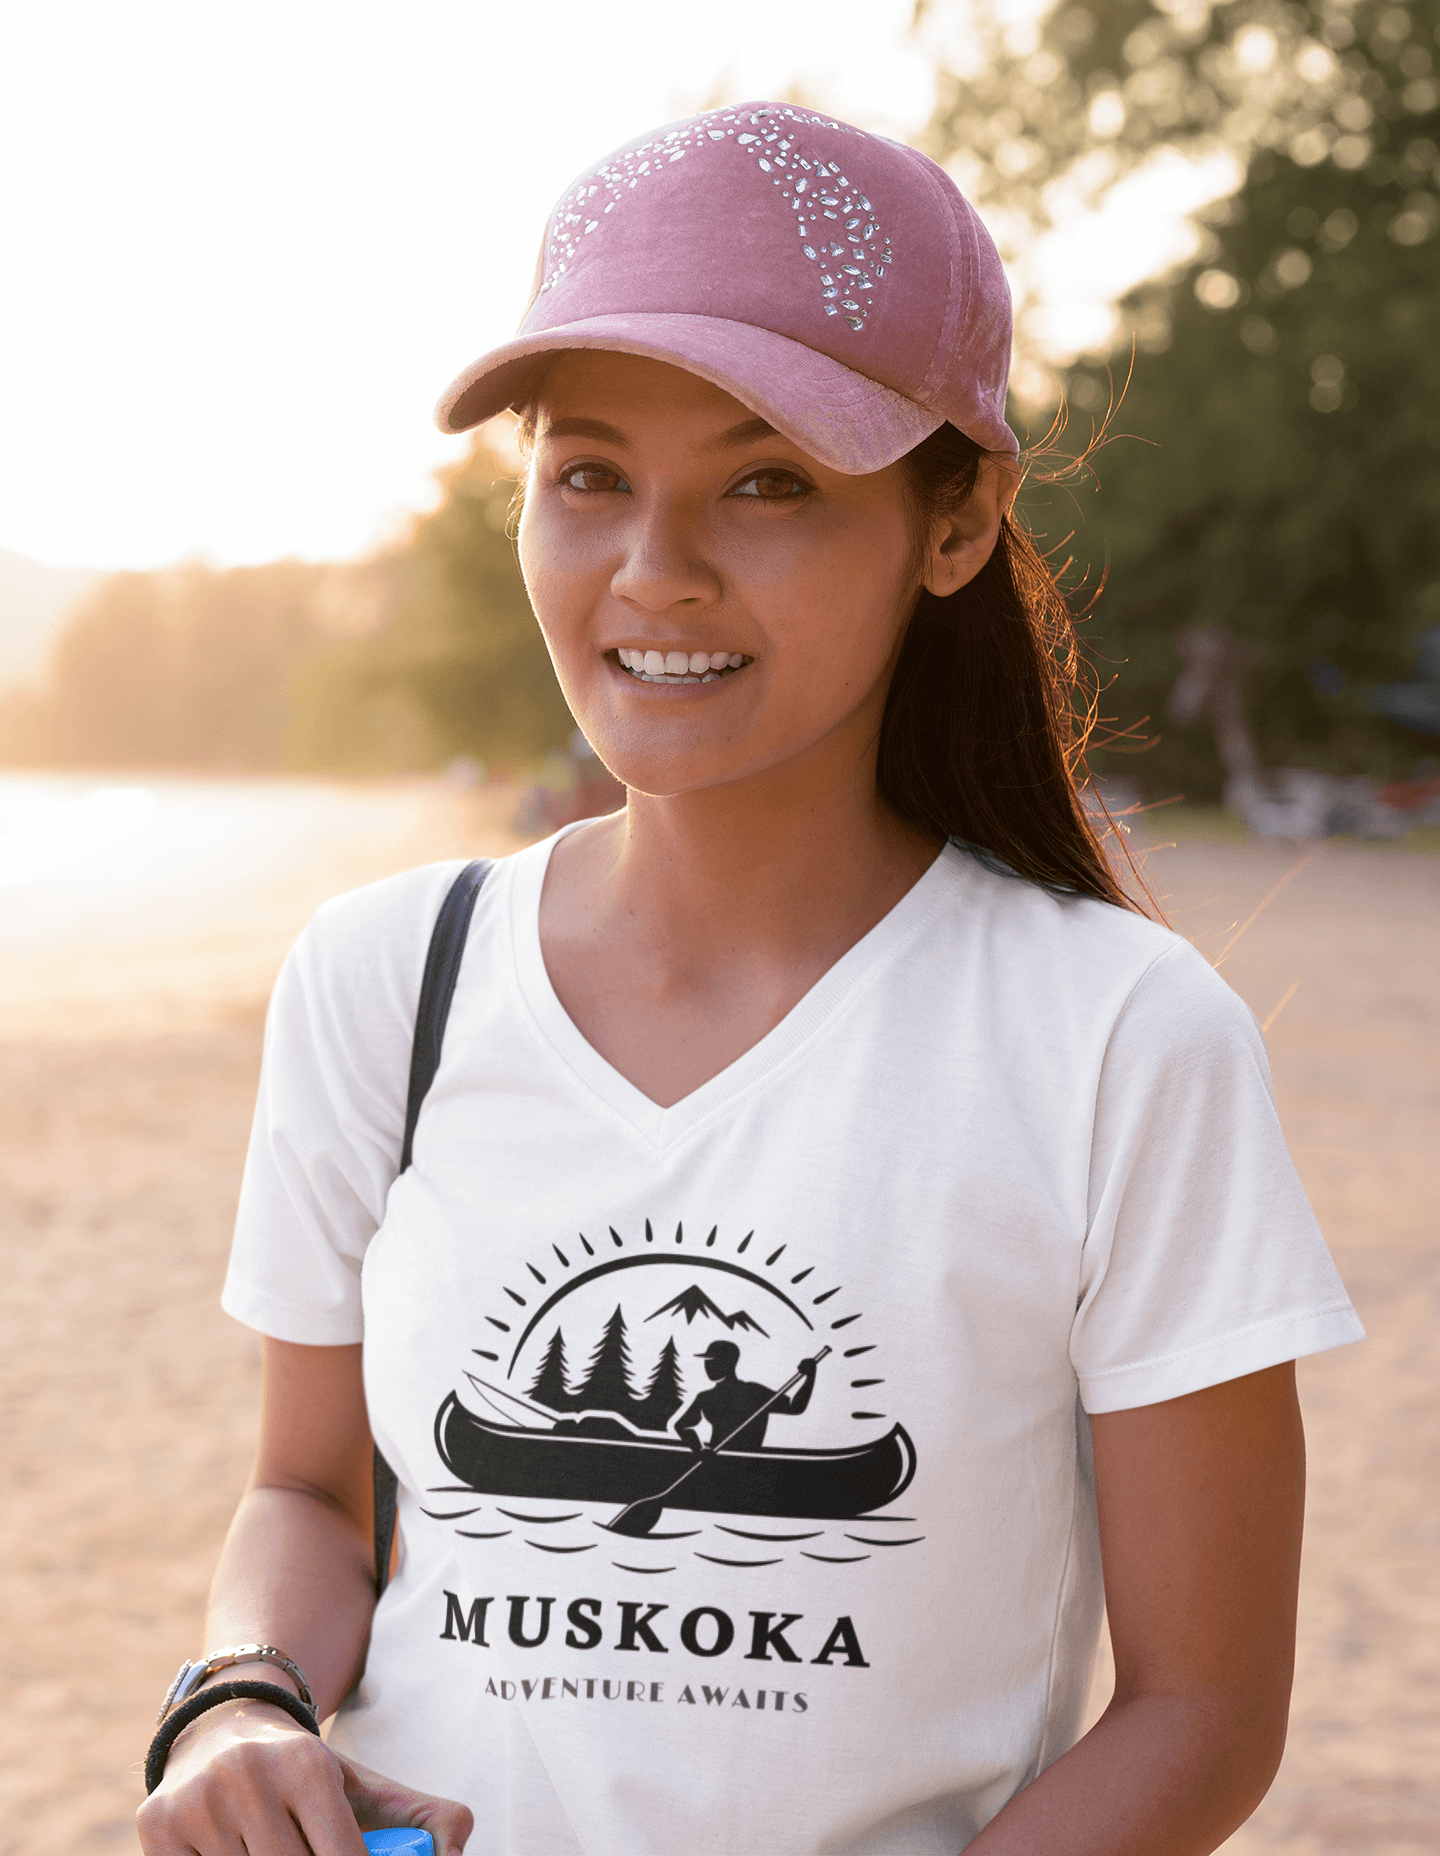 Muskoka Adventure Awaits Women's Jersey Short Sleeve Deep V-Neck Tee - Munchkin Place Shop 